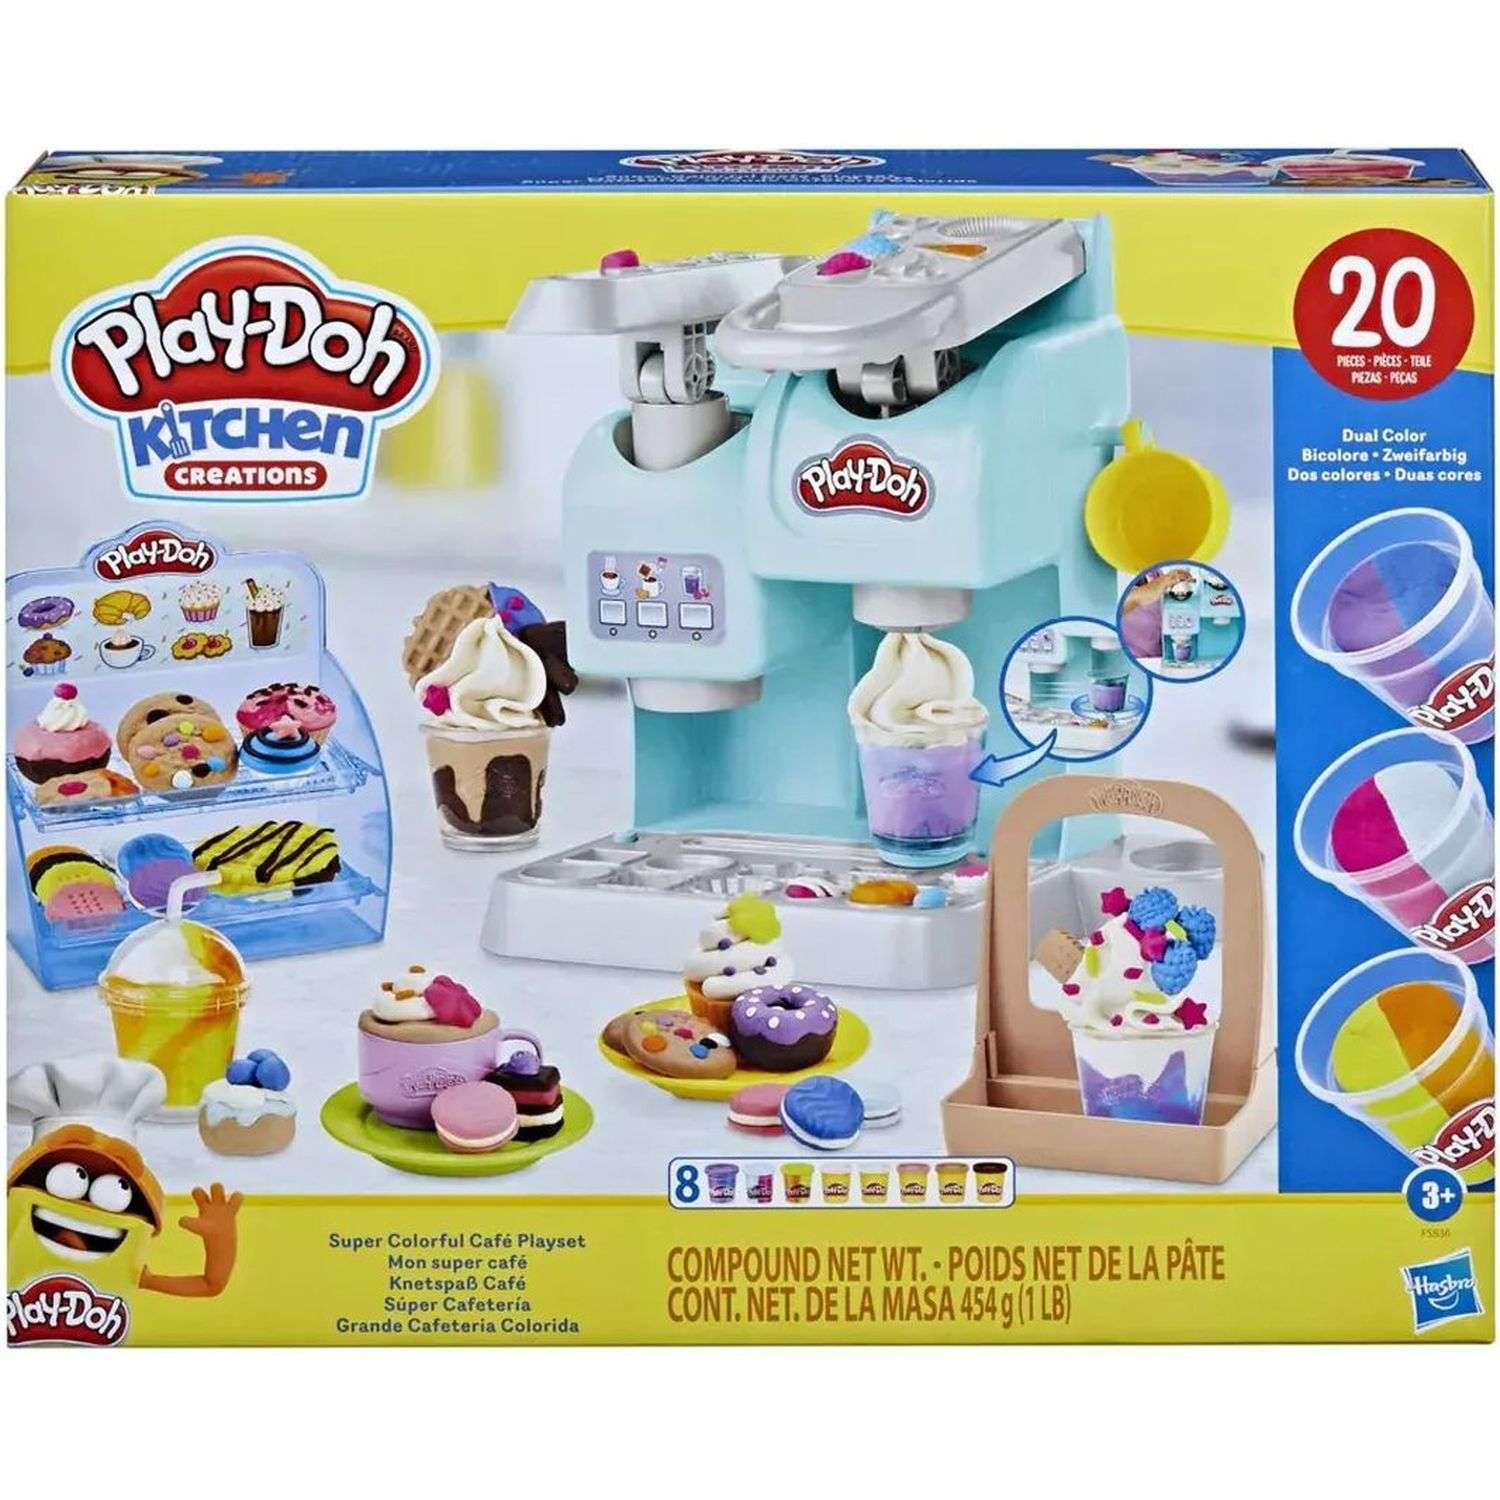 Пластилин Play-Doh возраст с 7 до 9 лет, купить в Москве – цена в интернет-магазине натяжныепотолкибрянск.рф